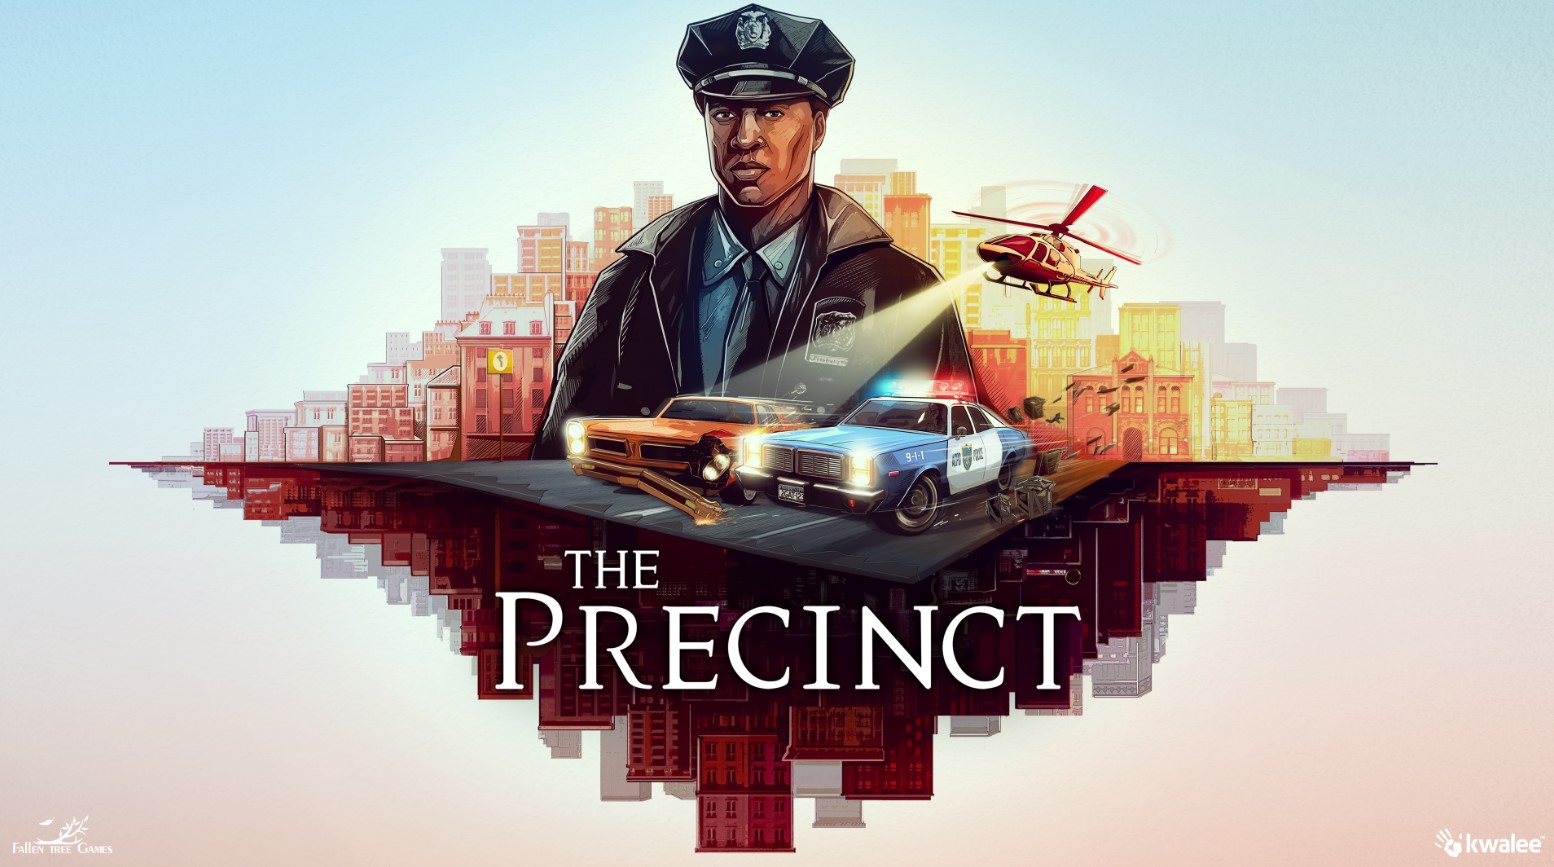 Kwalee publicarà el joc d’acció The Precinct